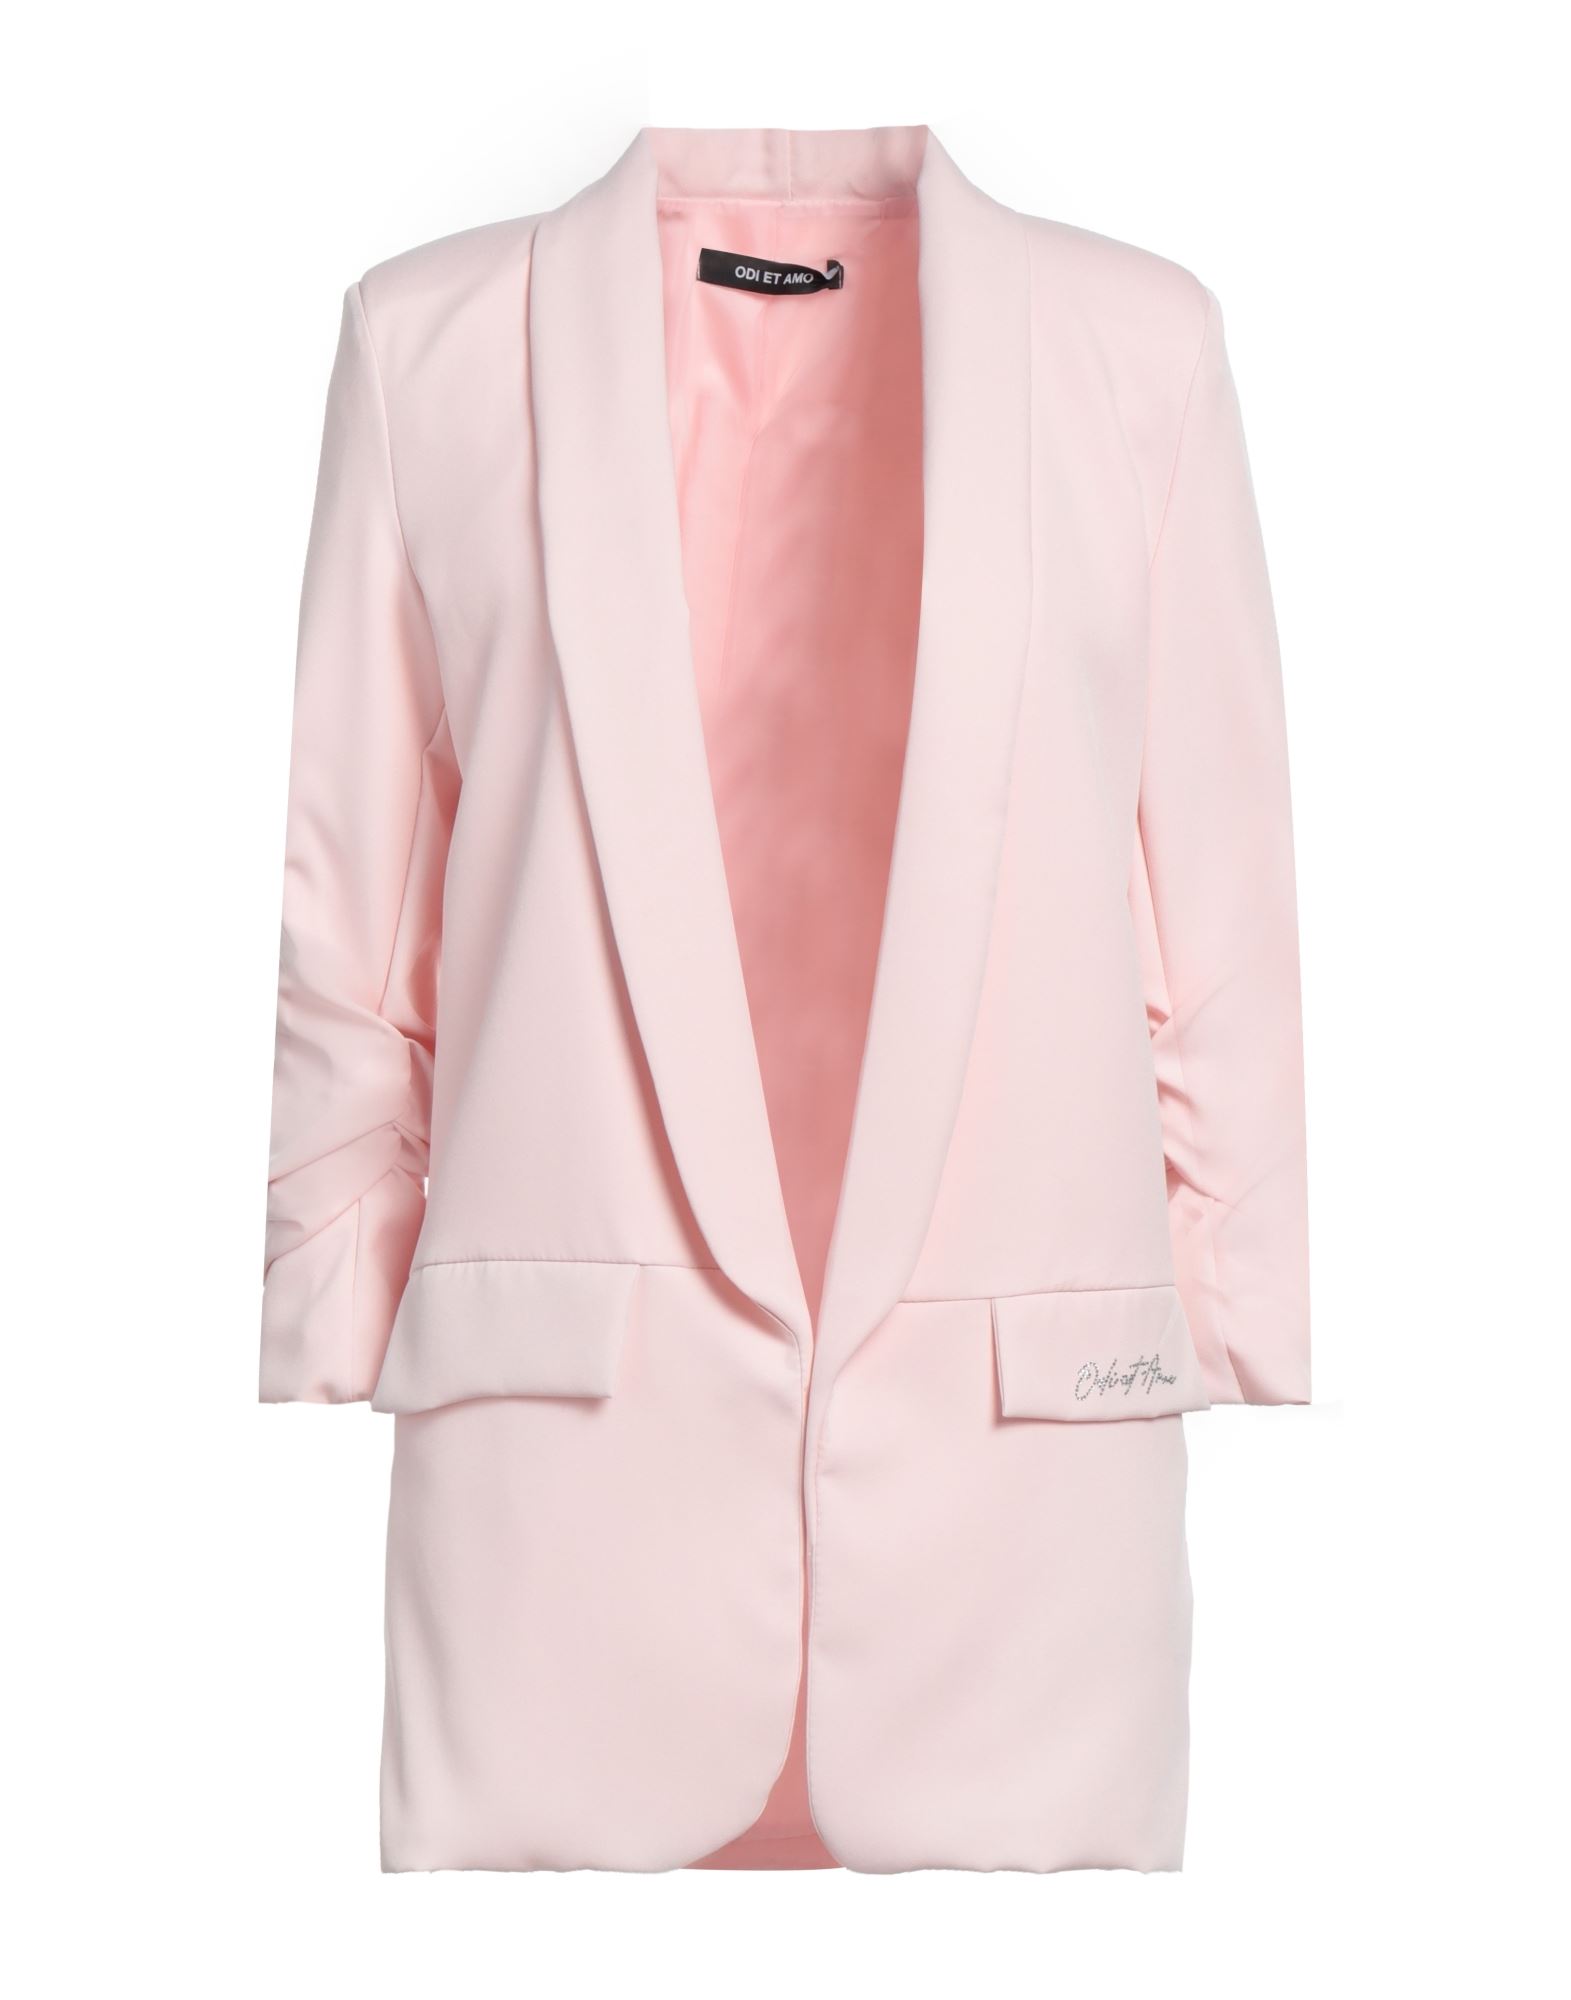 Odi Et Amo Suit Jackets In Pink